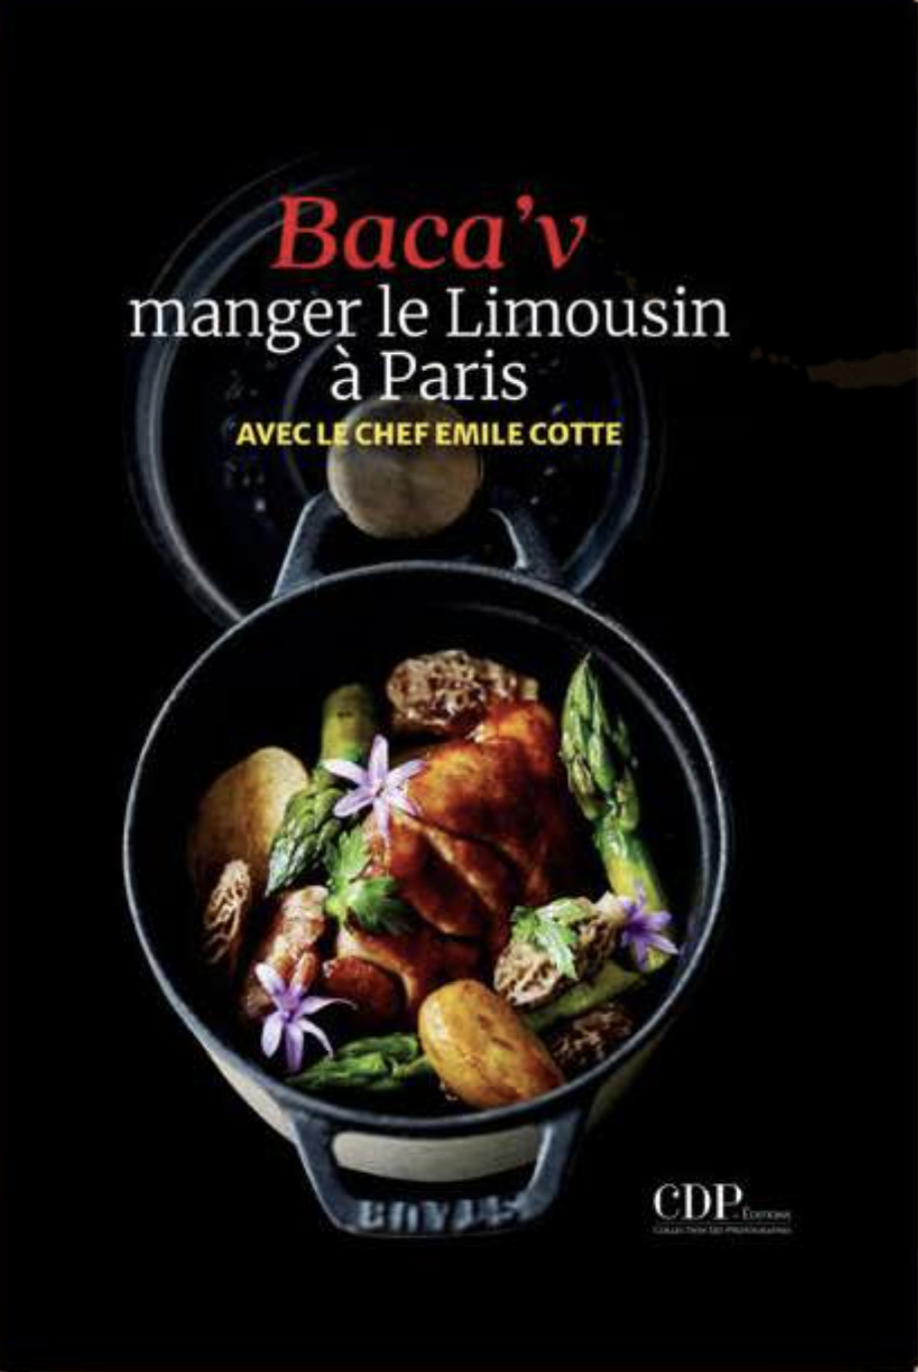 « Baca’v, manger le Limousin à Paris », premier ouvrage d’Emile Cotte